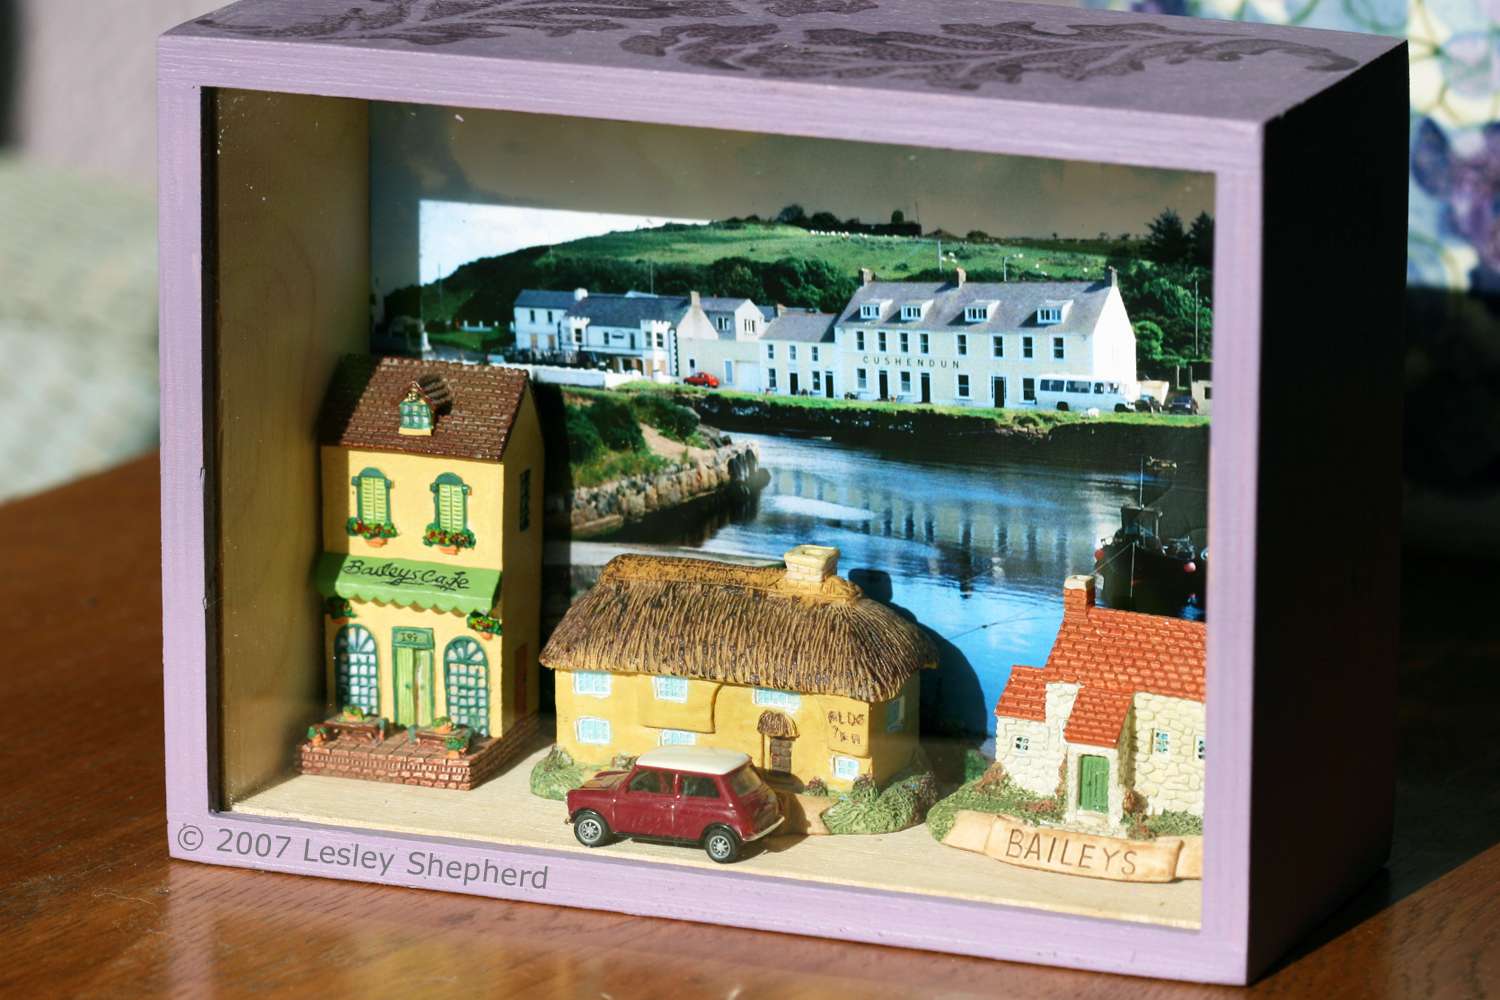 展示箱与收集微型爱尔兰小屋的照片背景